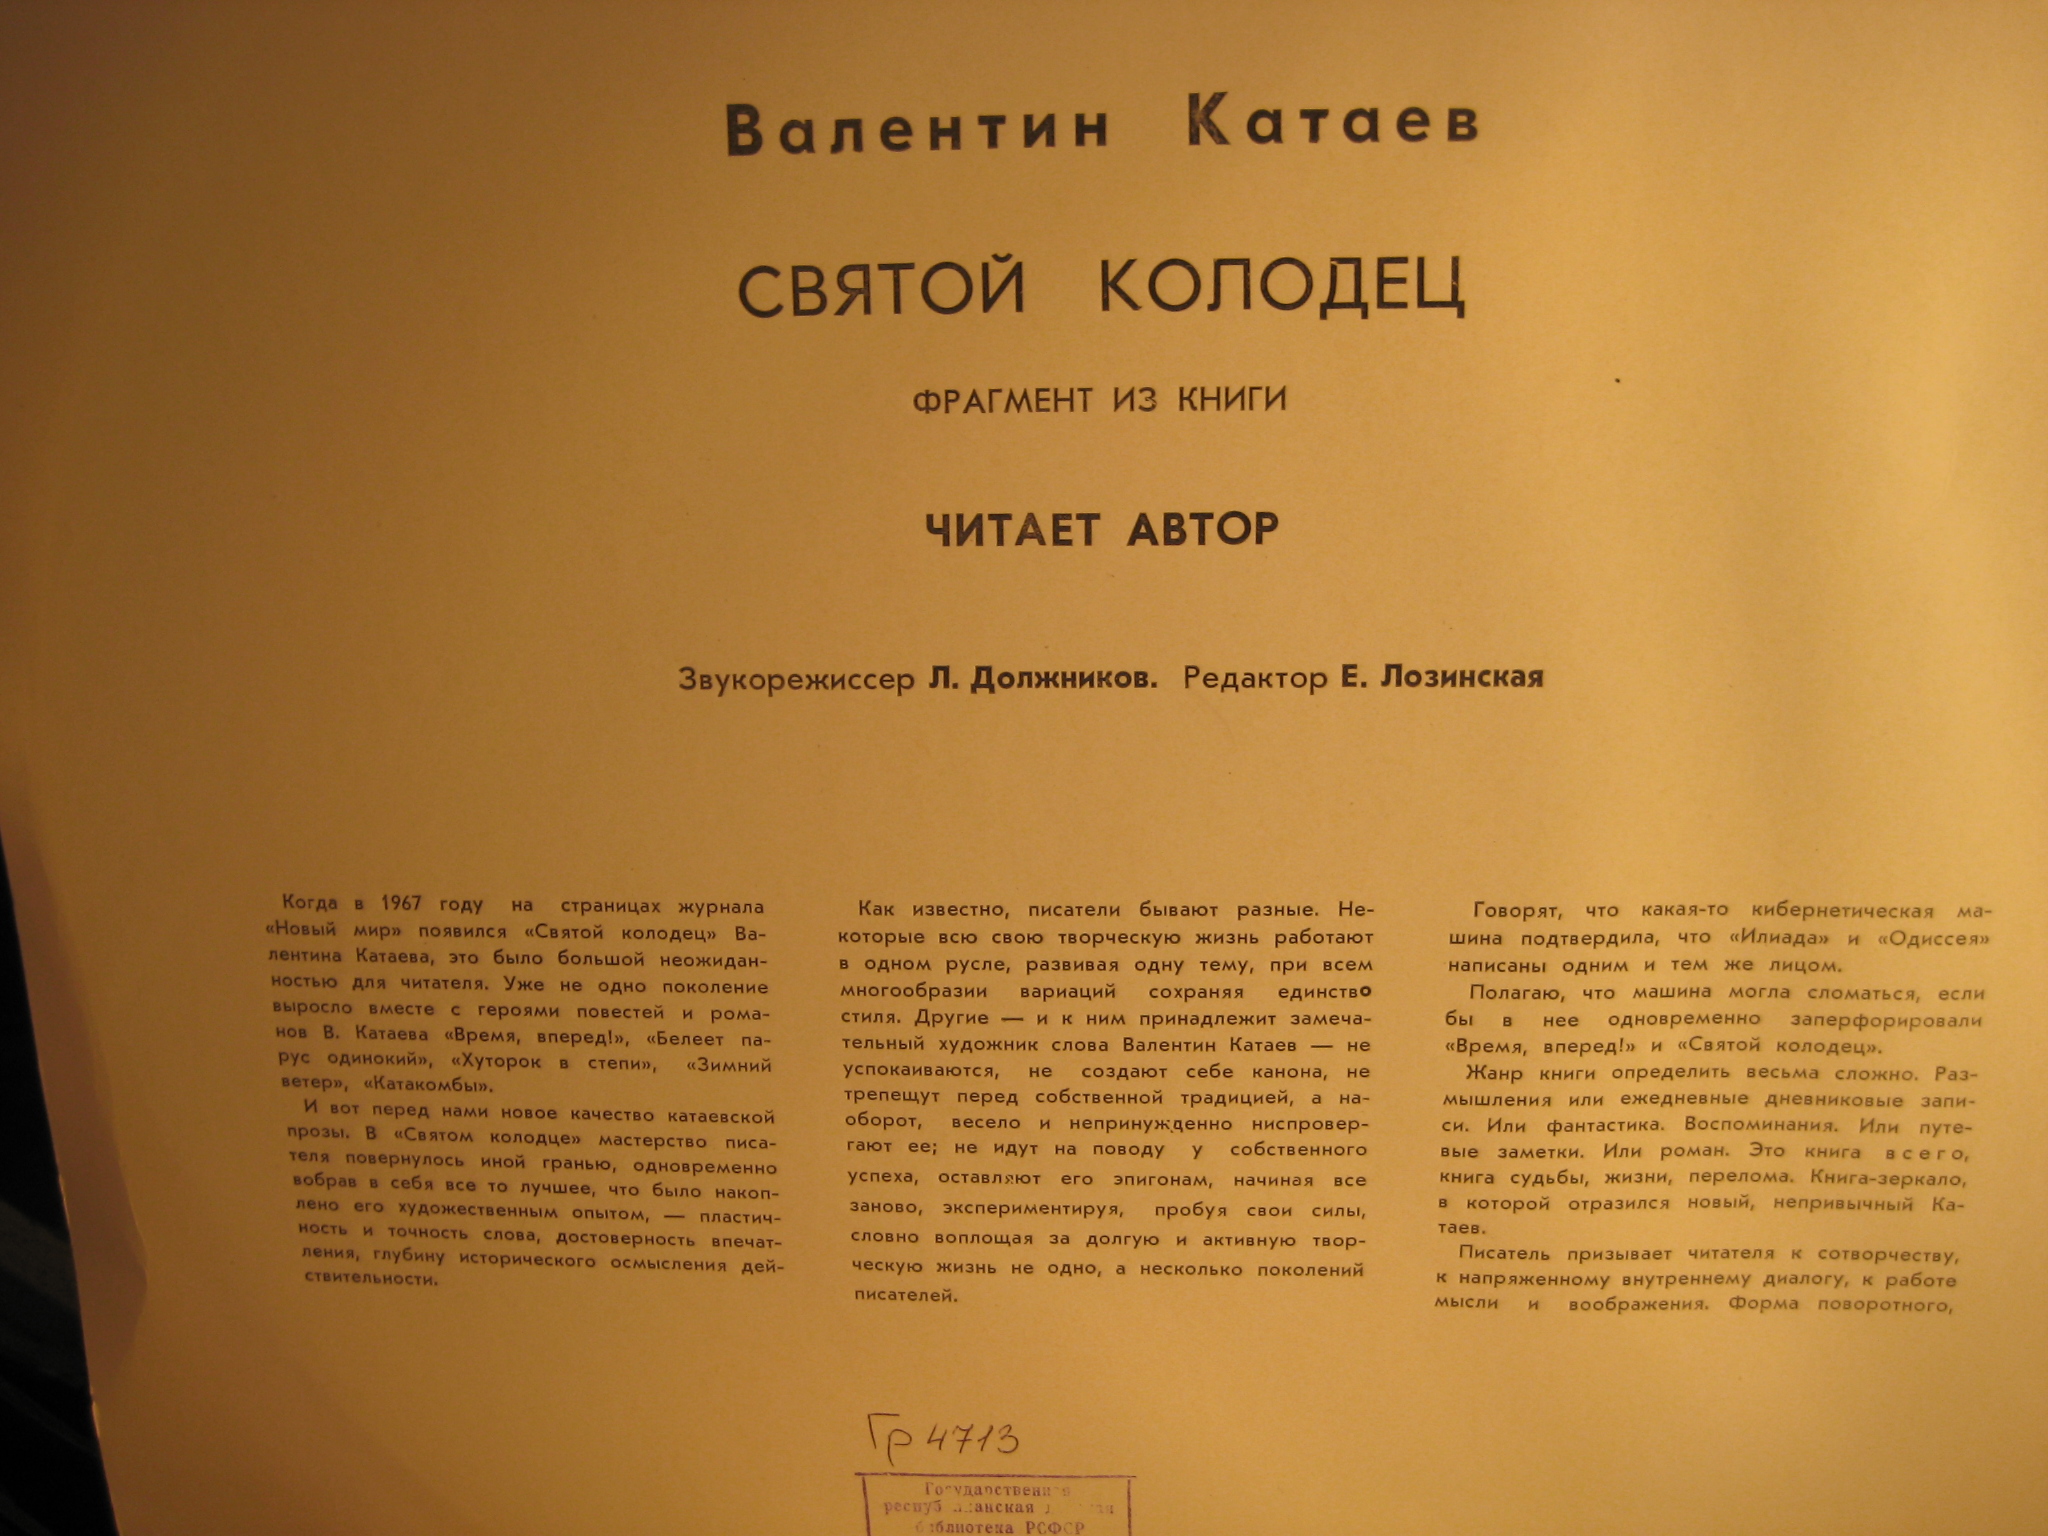 В. КАТАЕВ (1897): Святой колодец, фрагмент из книги (Читает автор)